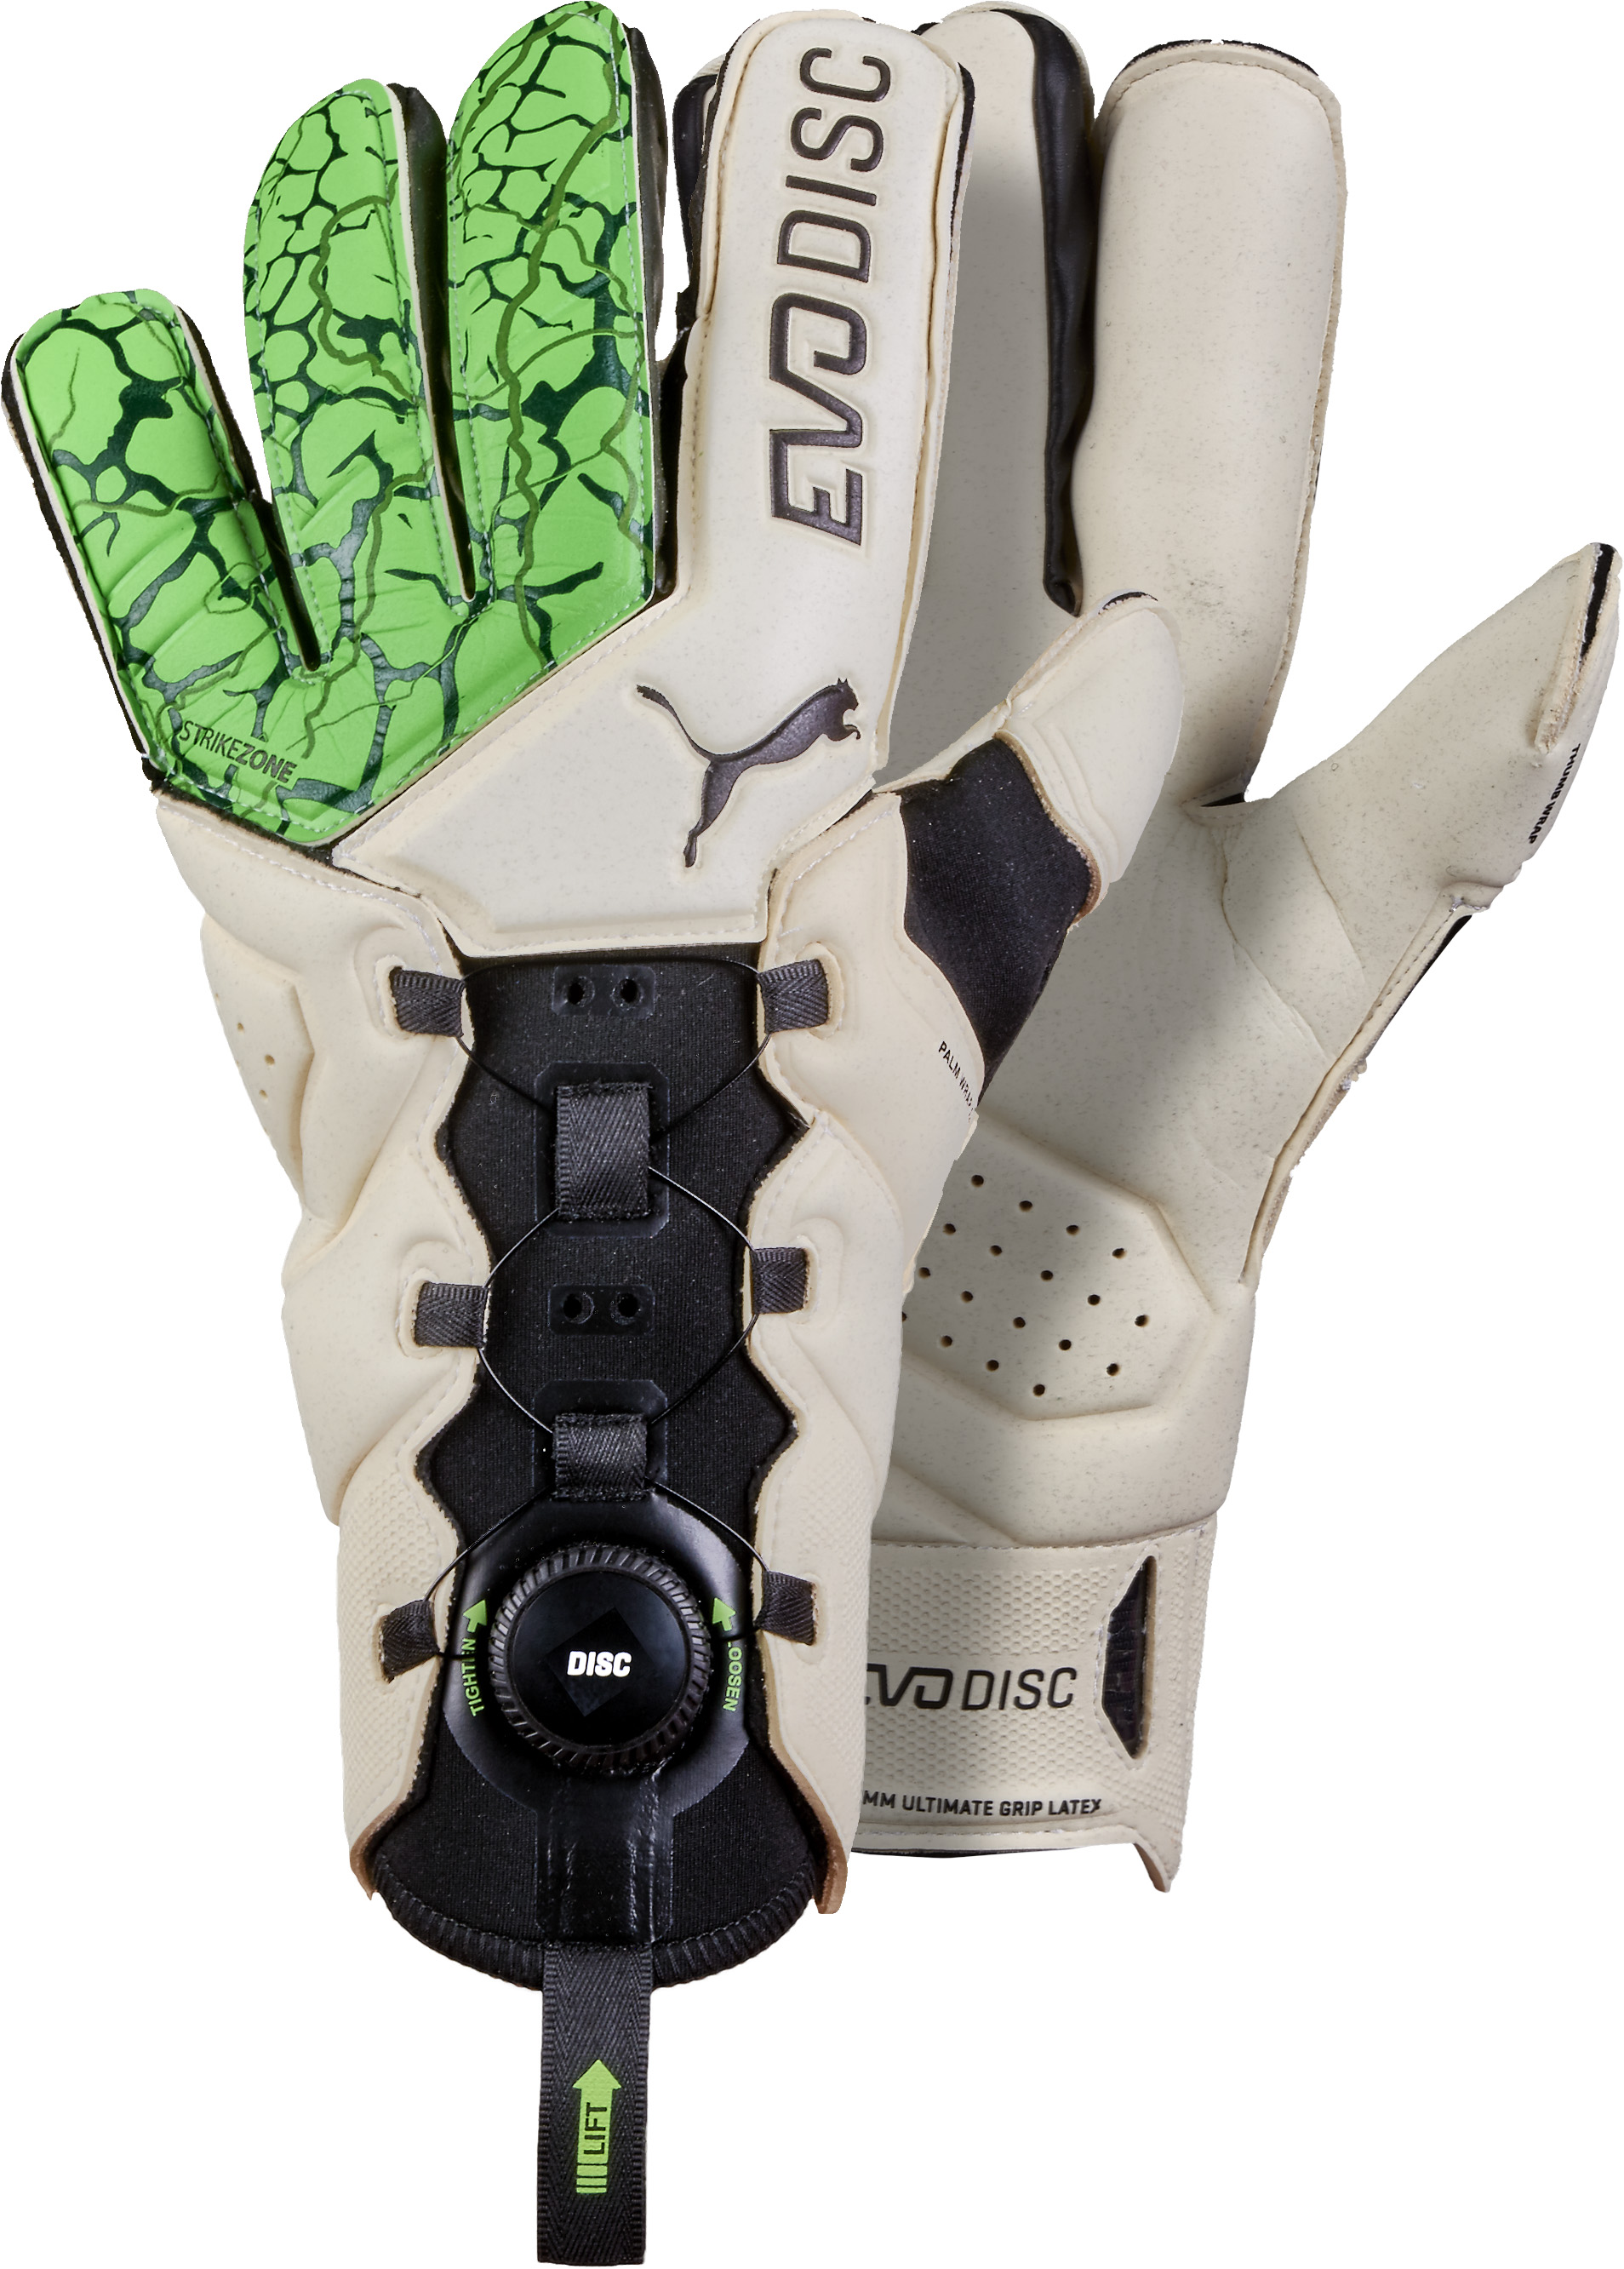 puma disc goalkeeper gloves